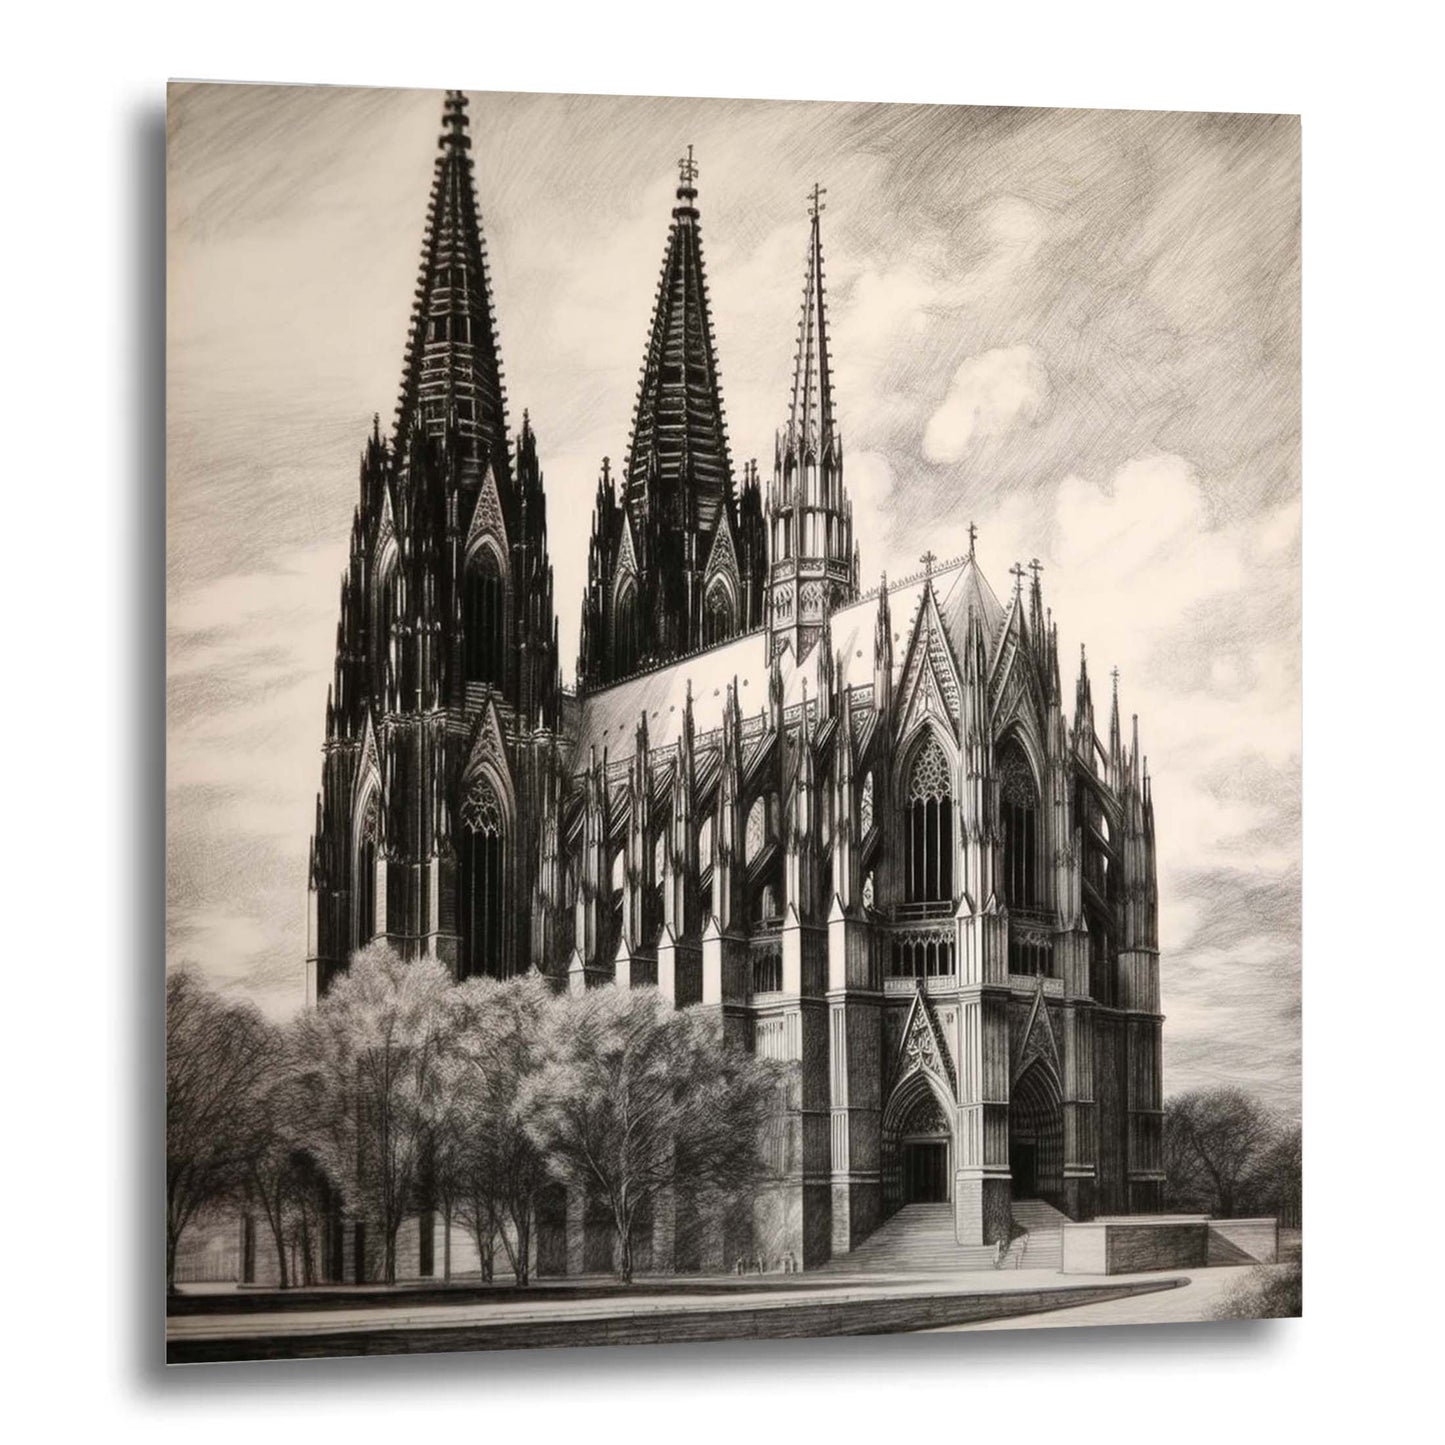 Kölner Dom - Wandbild in der Stilrichtung einer Zeichnung